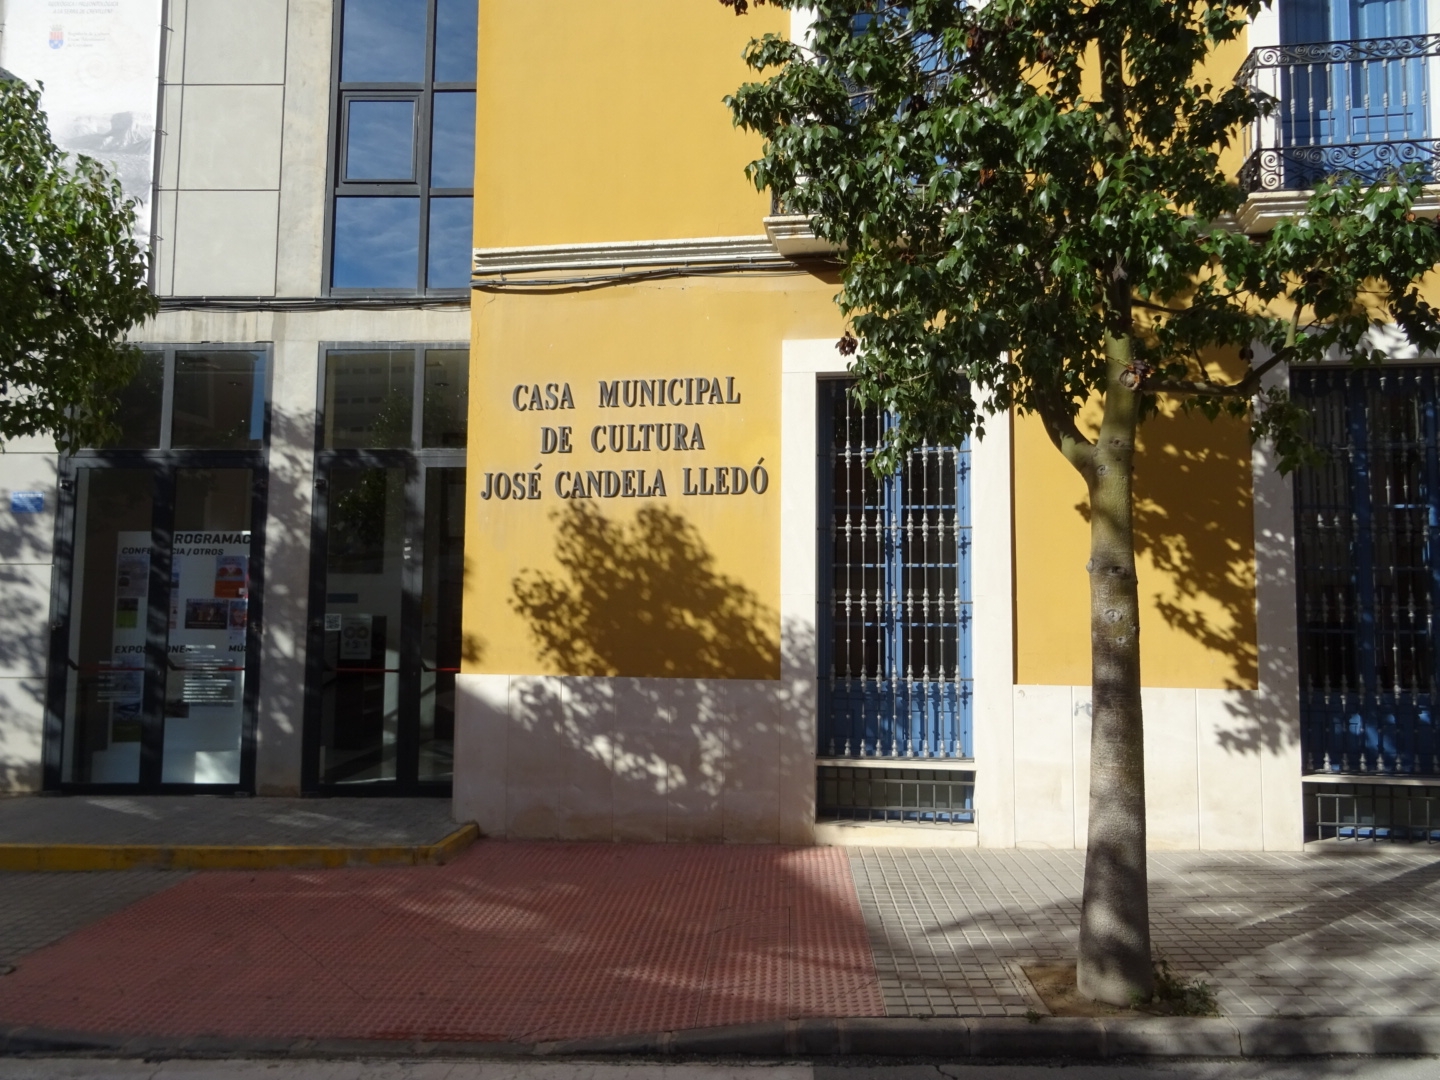 Casa Municipal de Cultura José Candela Lledó - Regidoria de Cultura i Festes. Crevillent